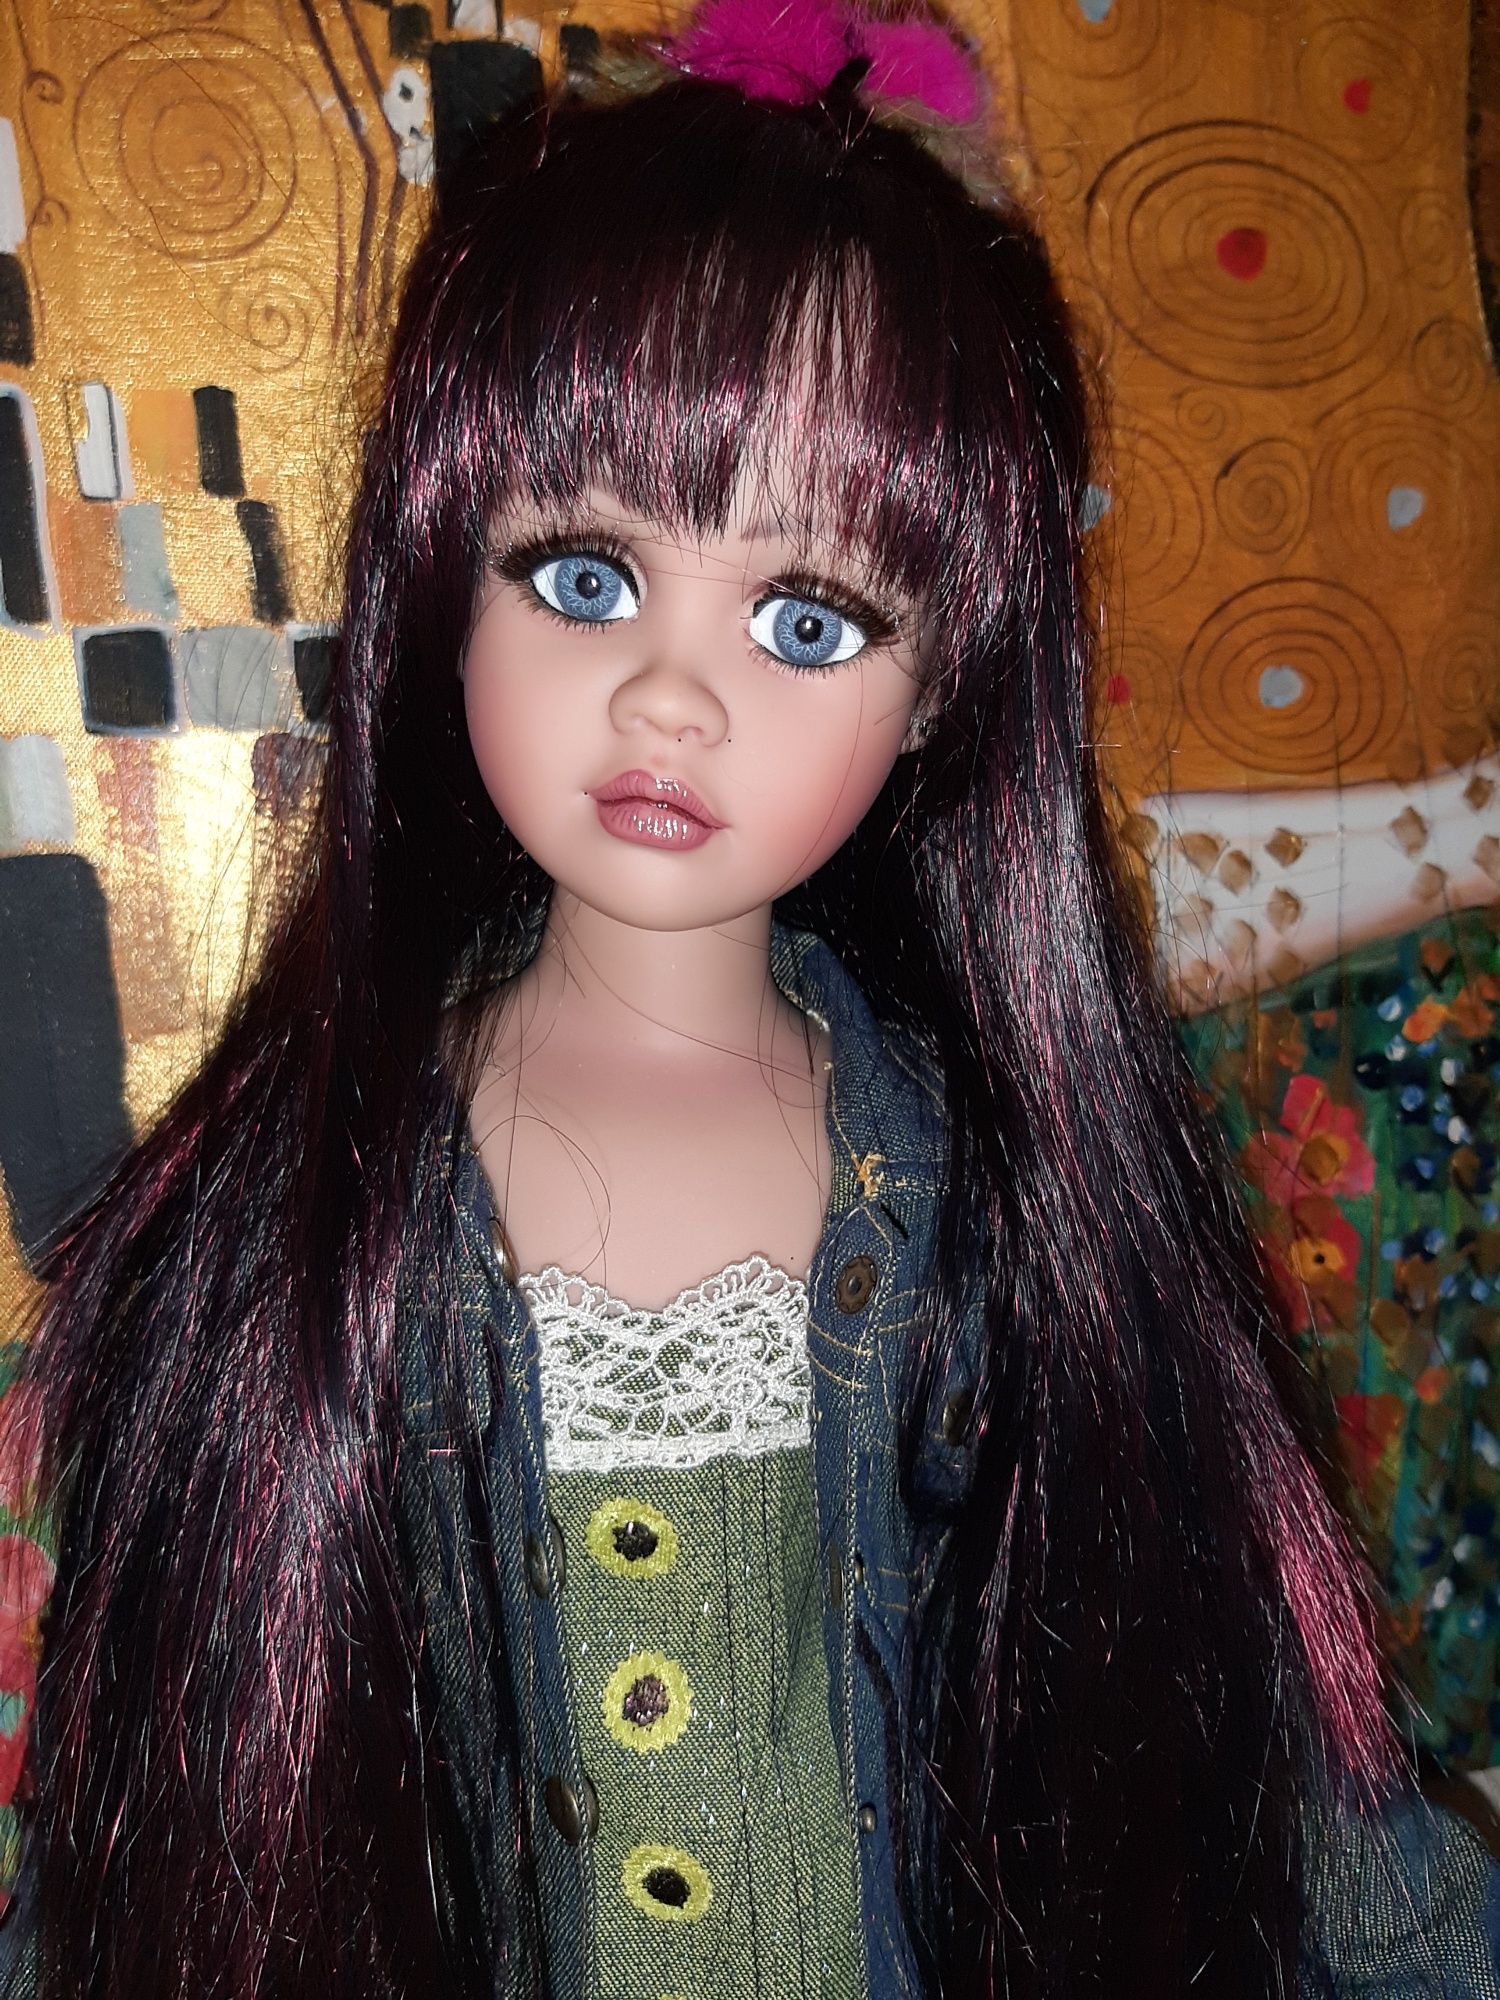 Редкая коллекционная кукла Jan Mclean по имени Maggie